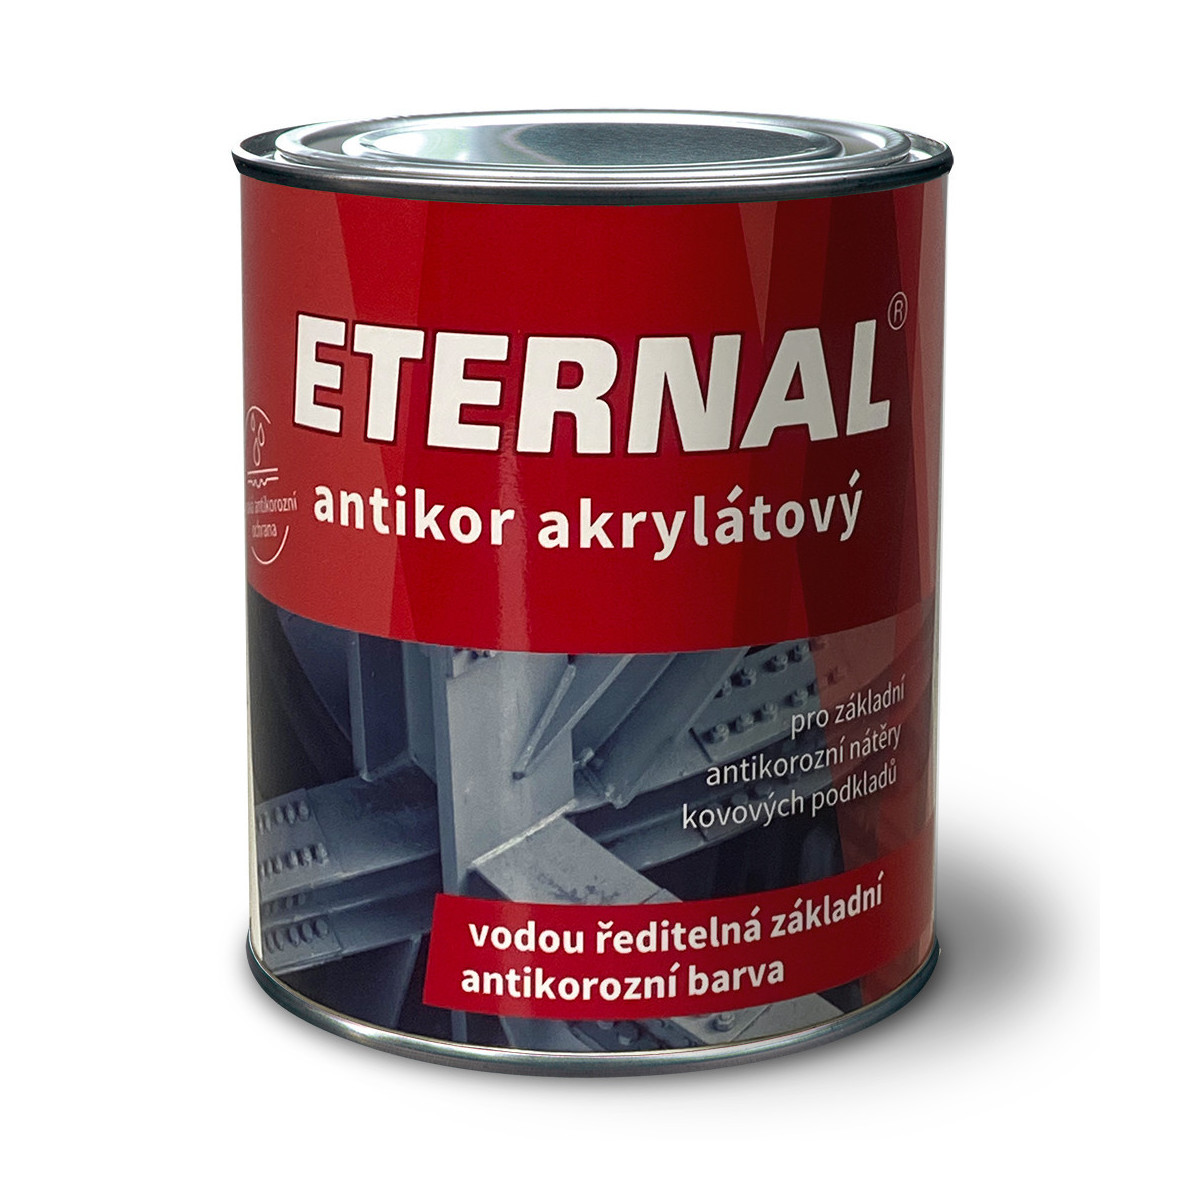 Eternal antikor akryl